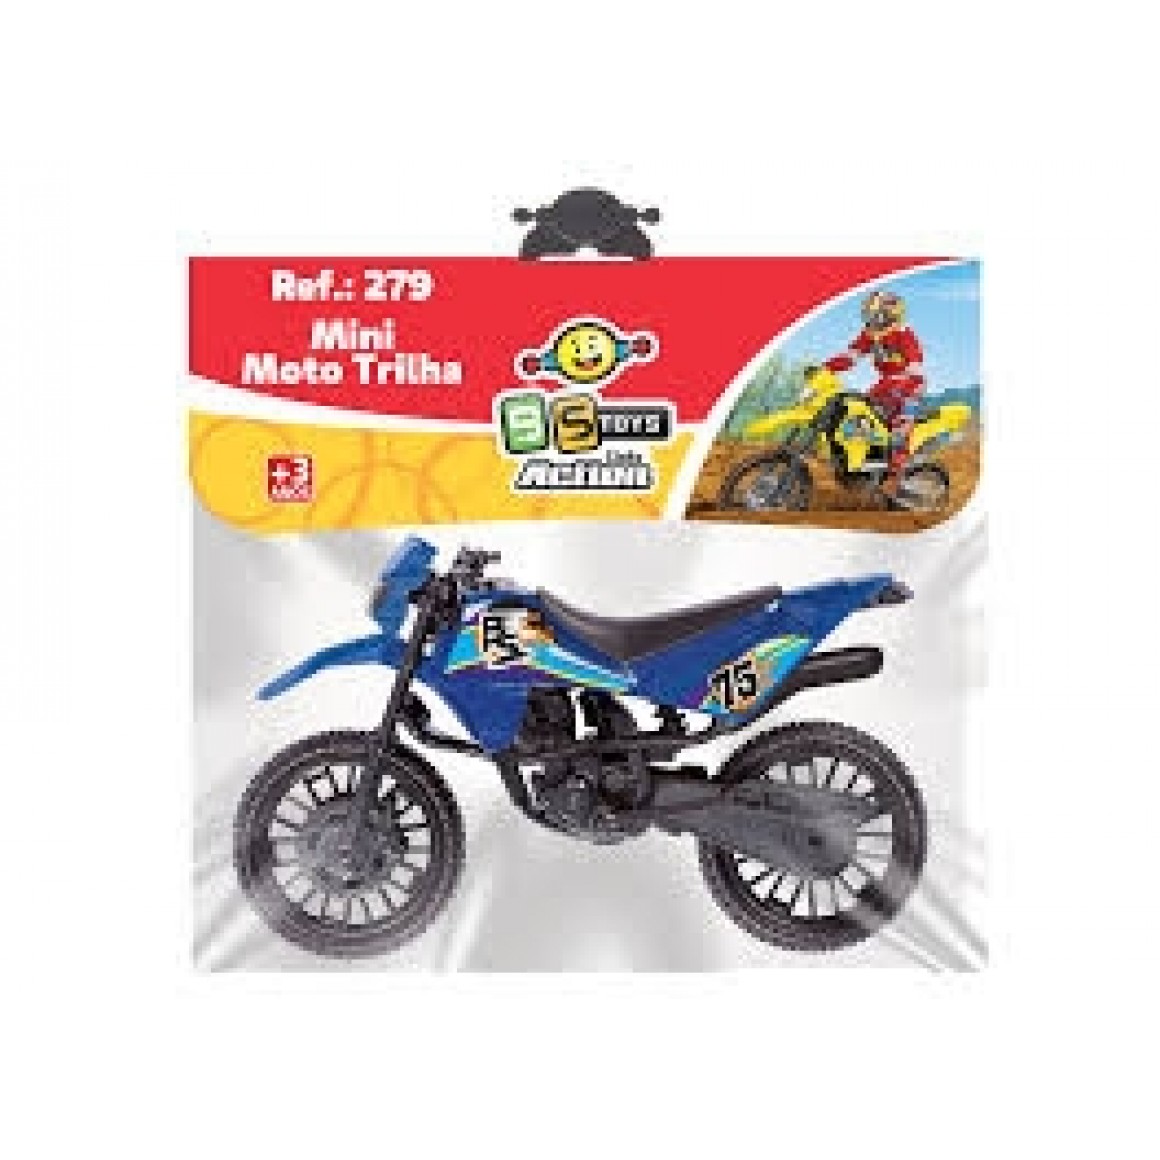 Moto de Trilha BS Toys – Core sortidas 24 cm – Maior Loja de